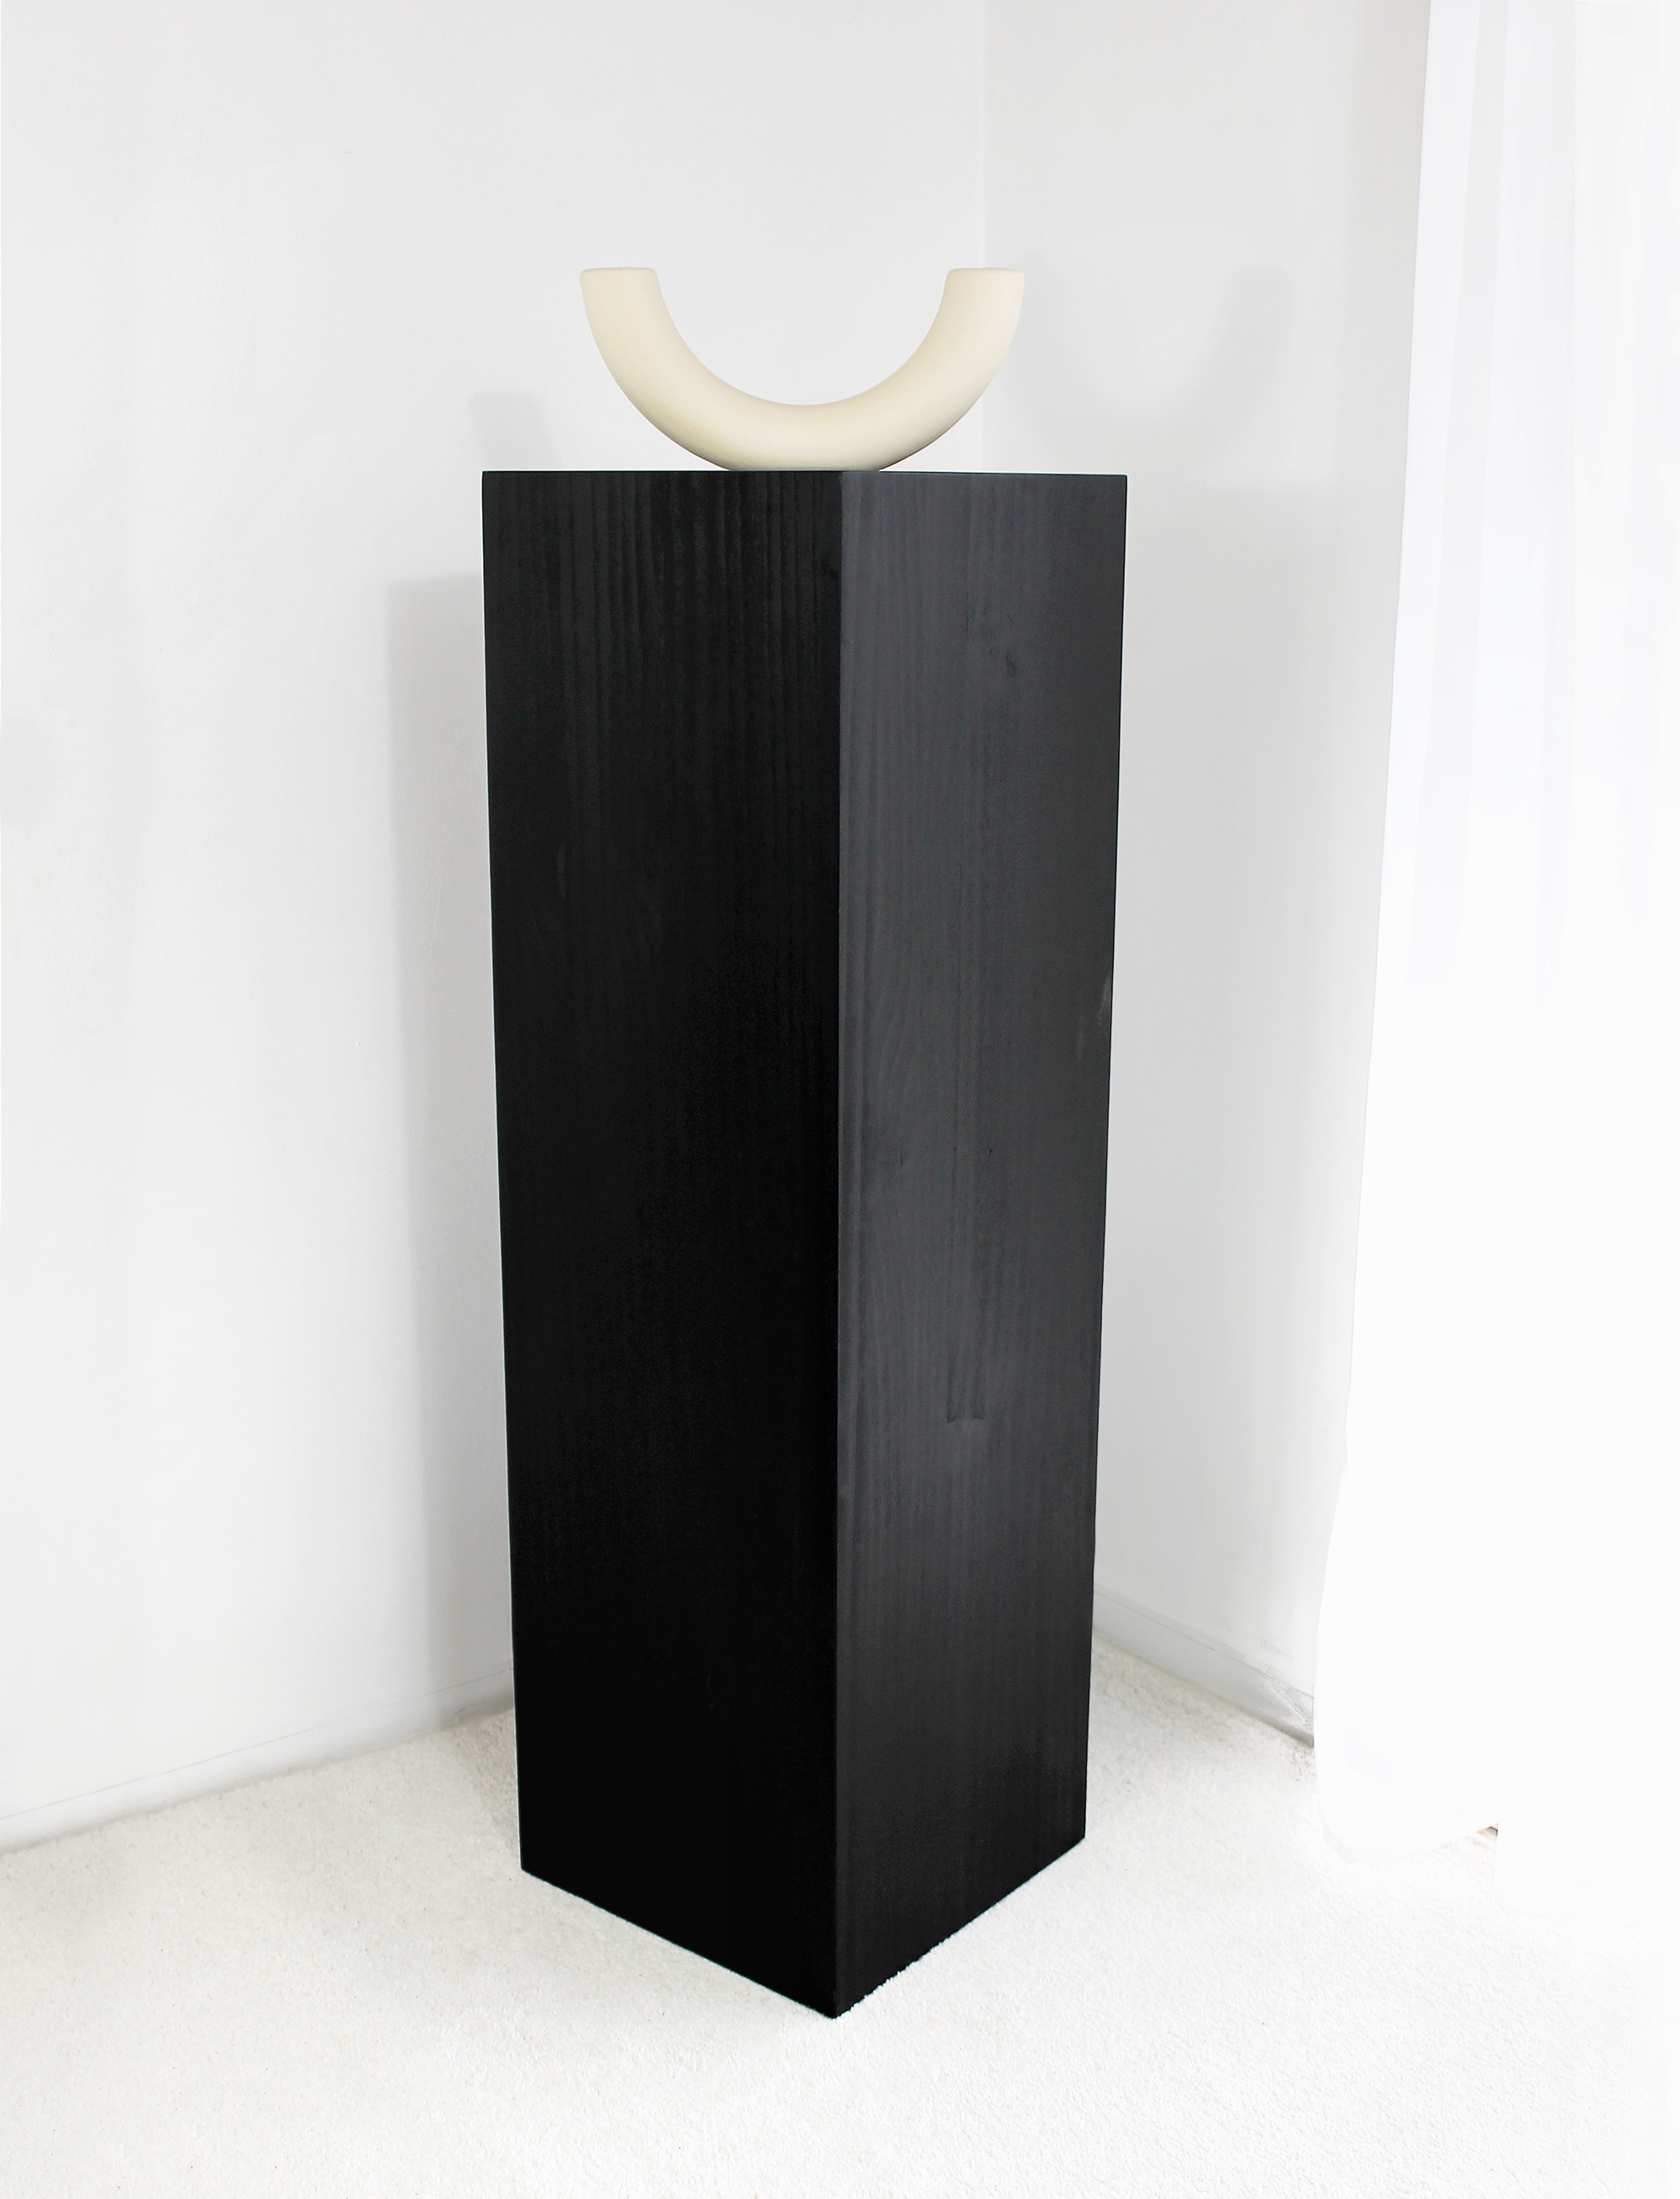 Pedestal para escultura Maison / Plinto madera  5